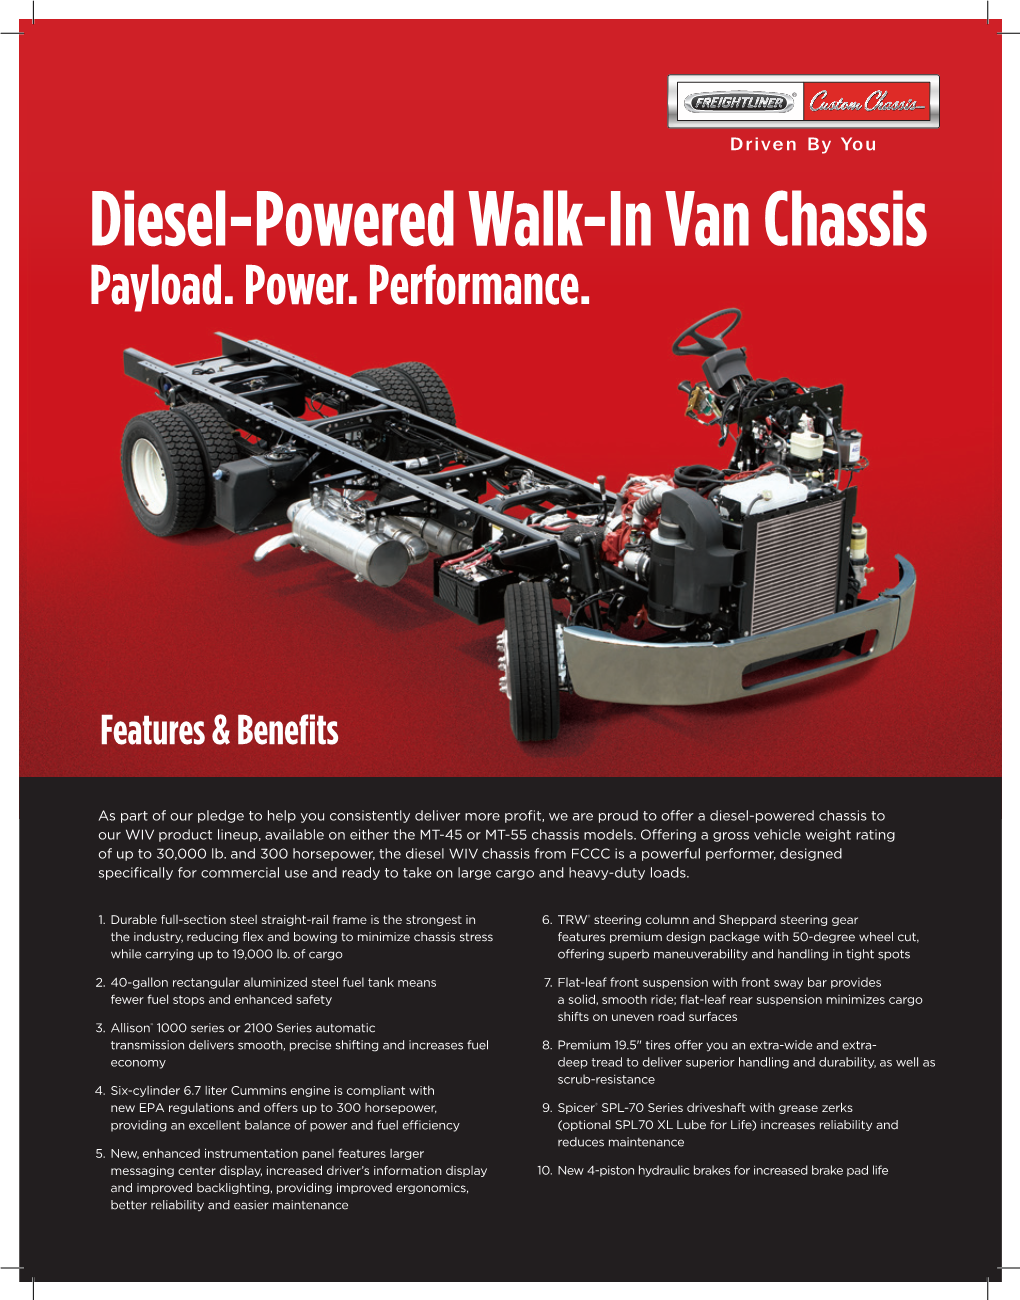 Diesel-Powered Walk-In Van Chassis Payload